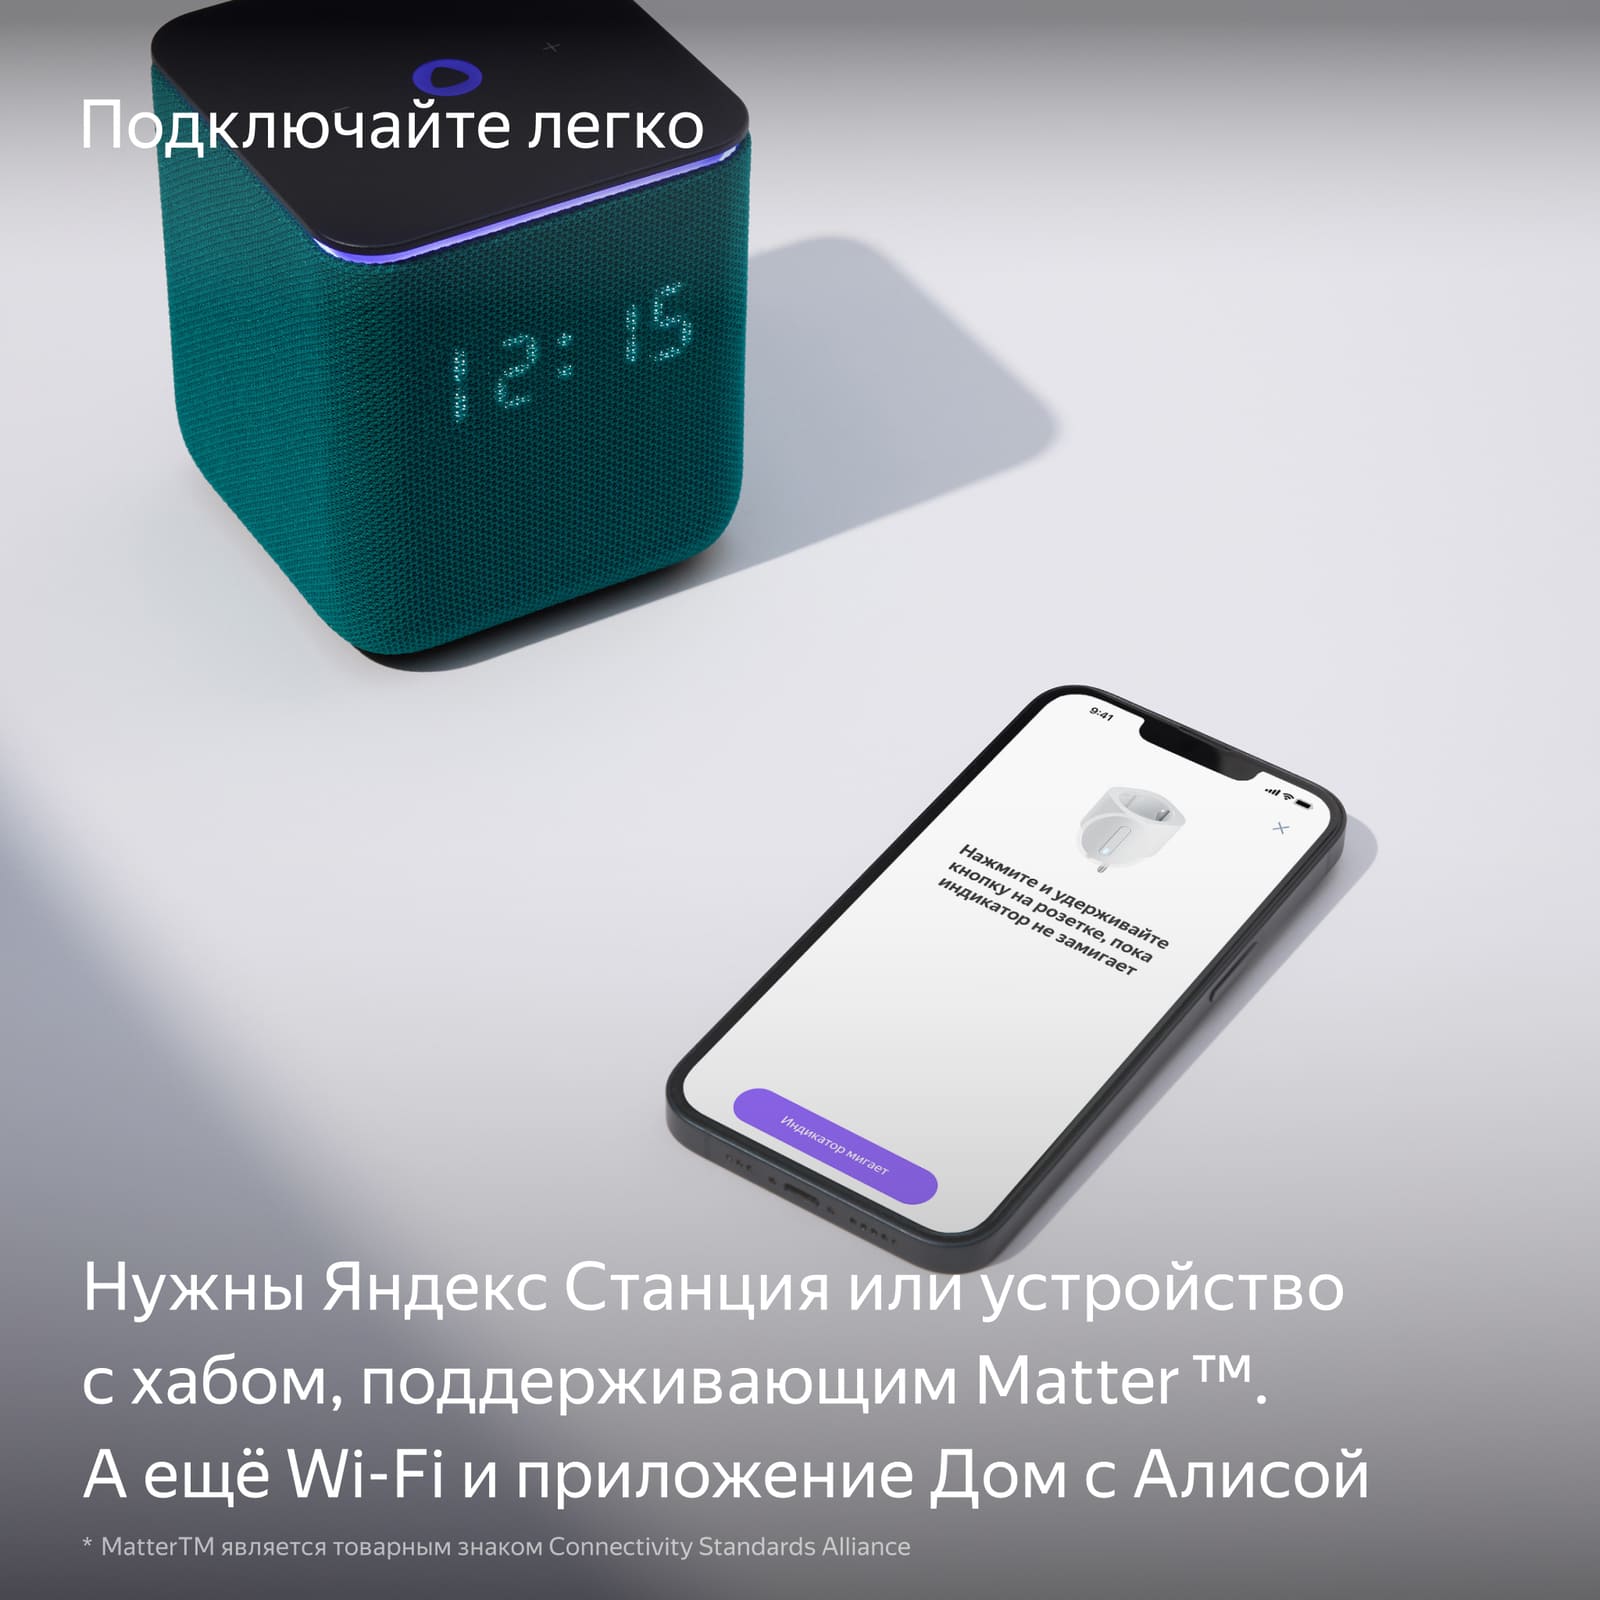 Нужны Яндекс станция или устройство с хабом, поддерживающим Matter.